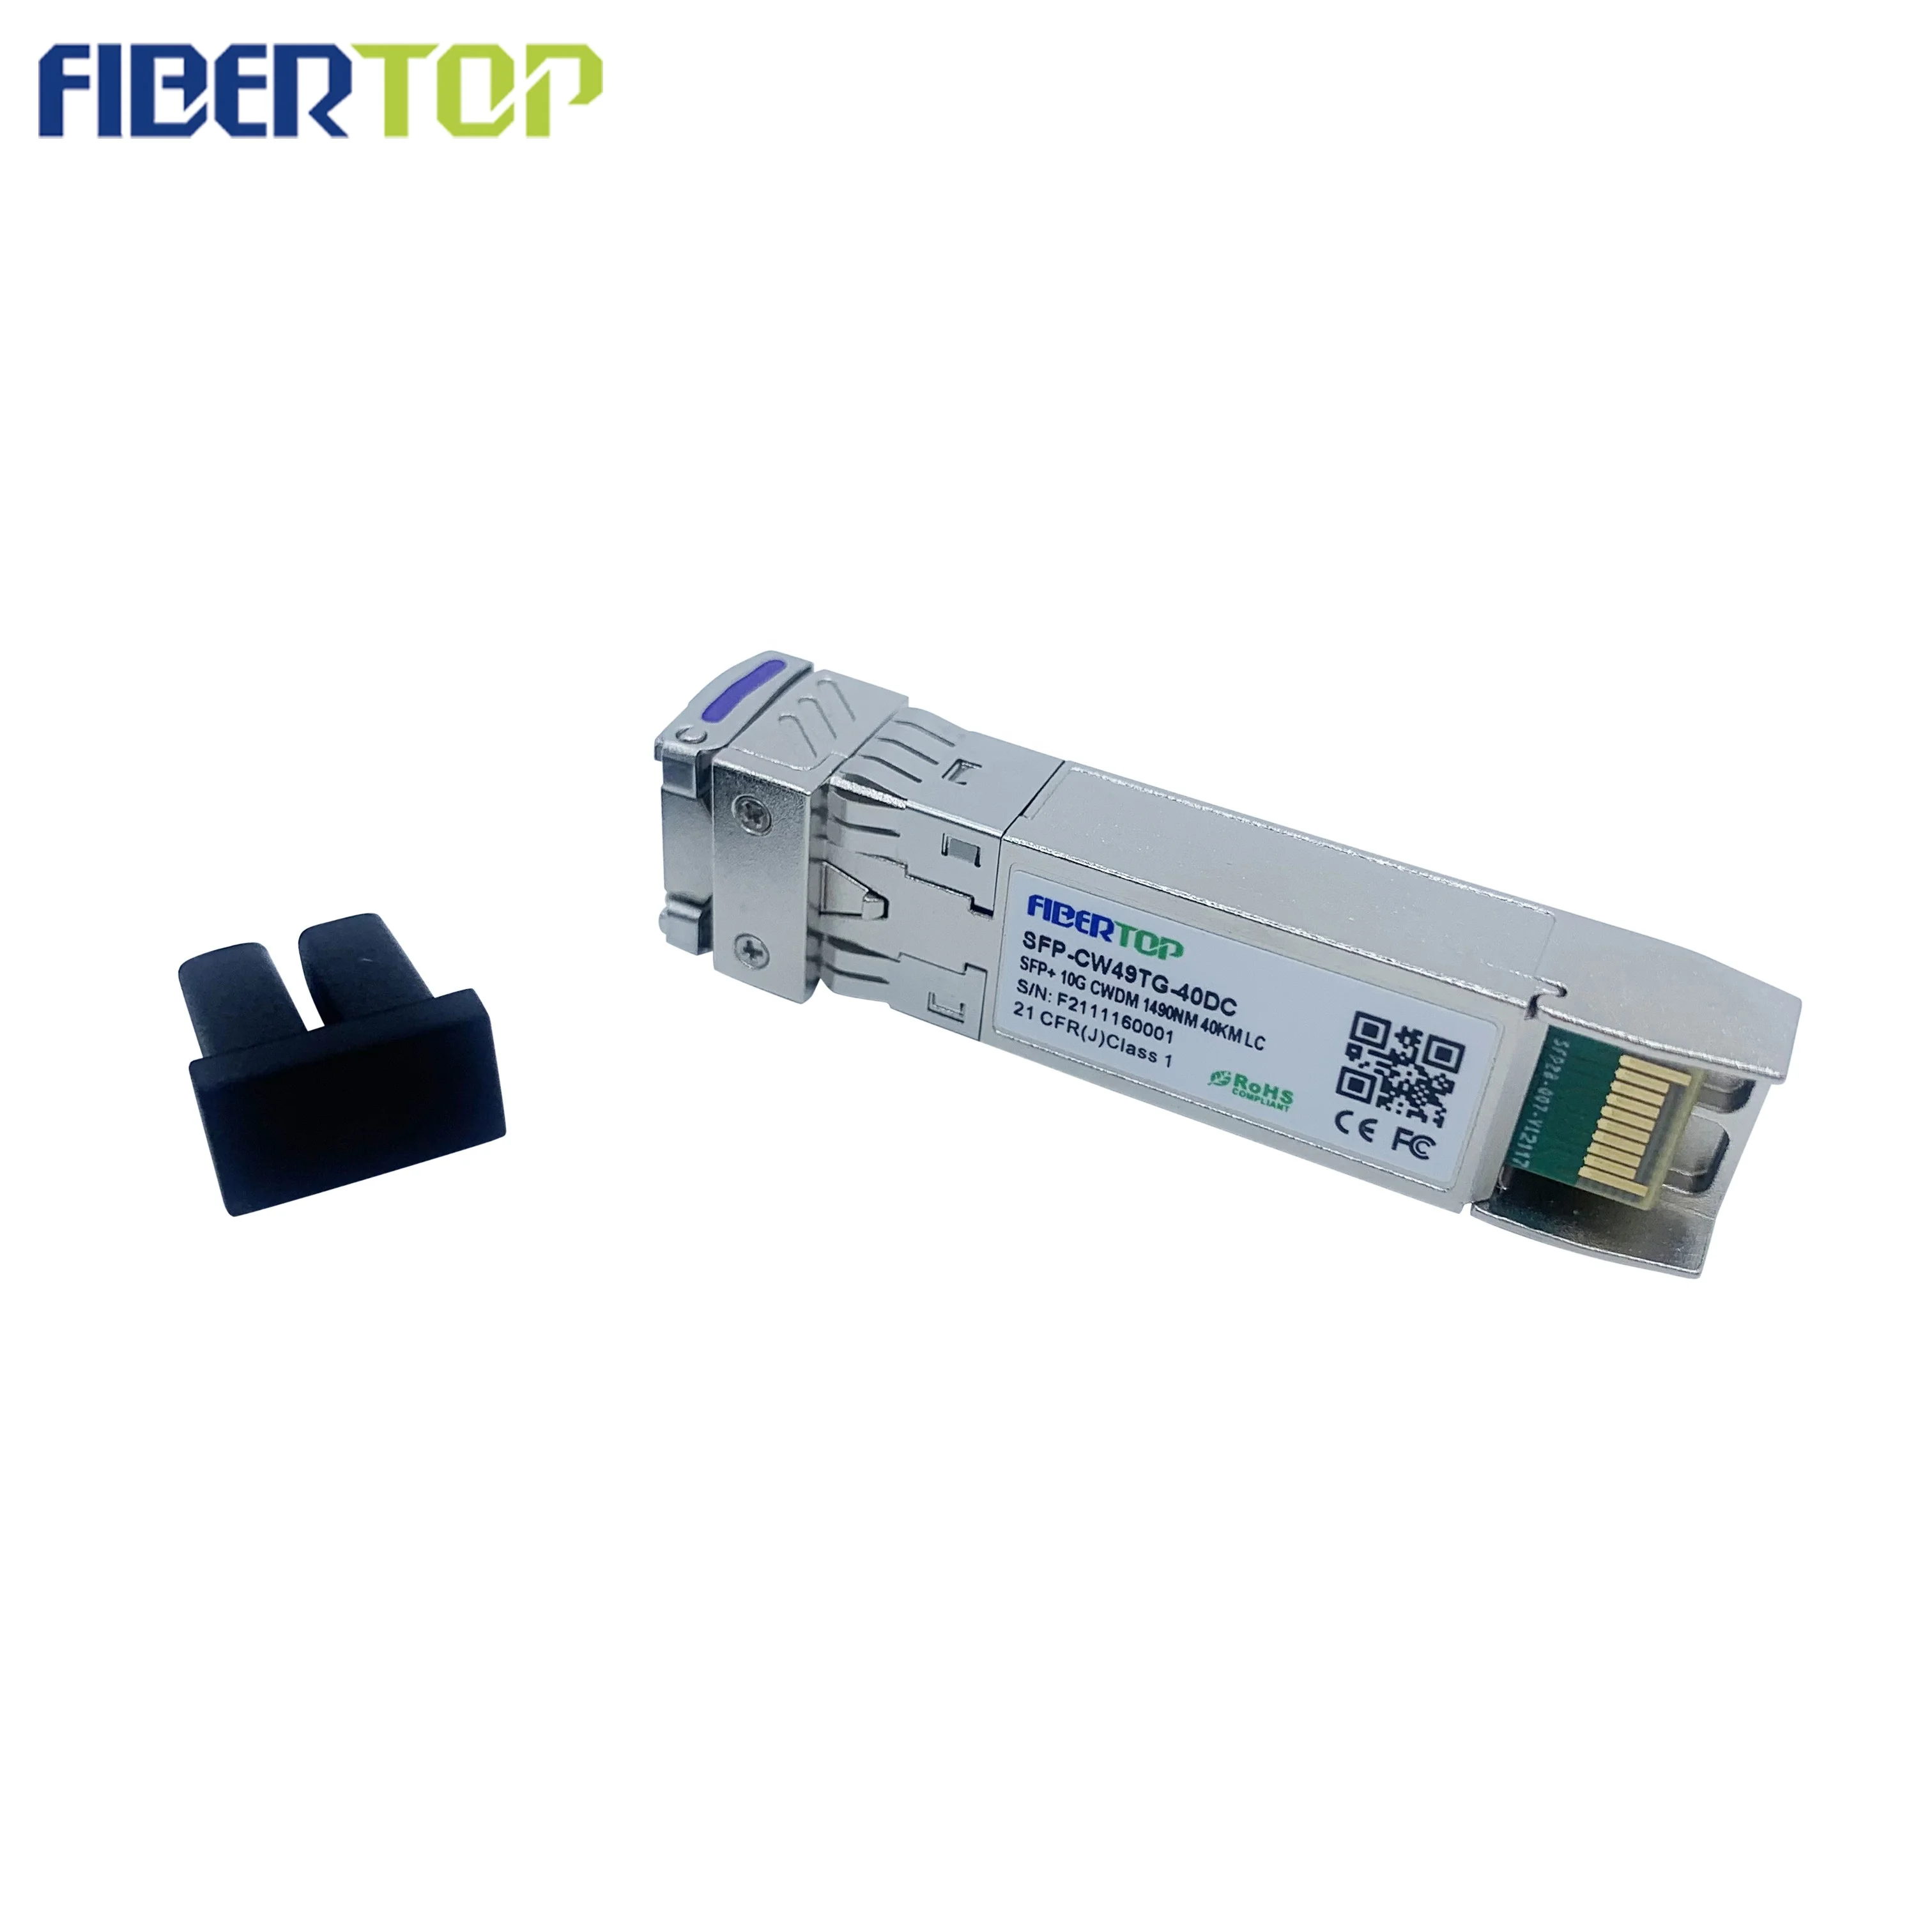 FİBERTOP 10g cwdm sfp + optik modül en iyi fiber optik internet doğrudan bağlantılı alıcı-verici Görüntü 3